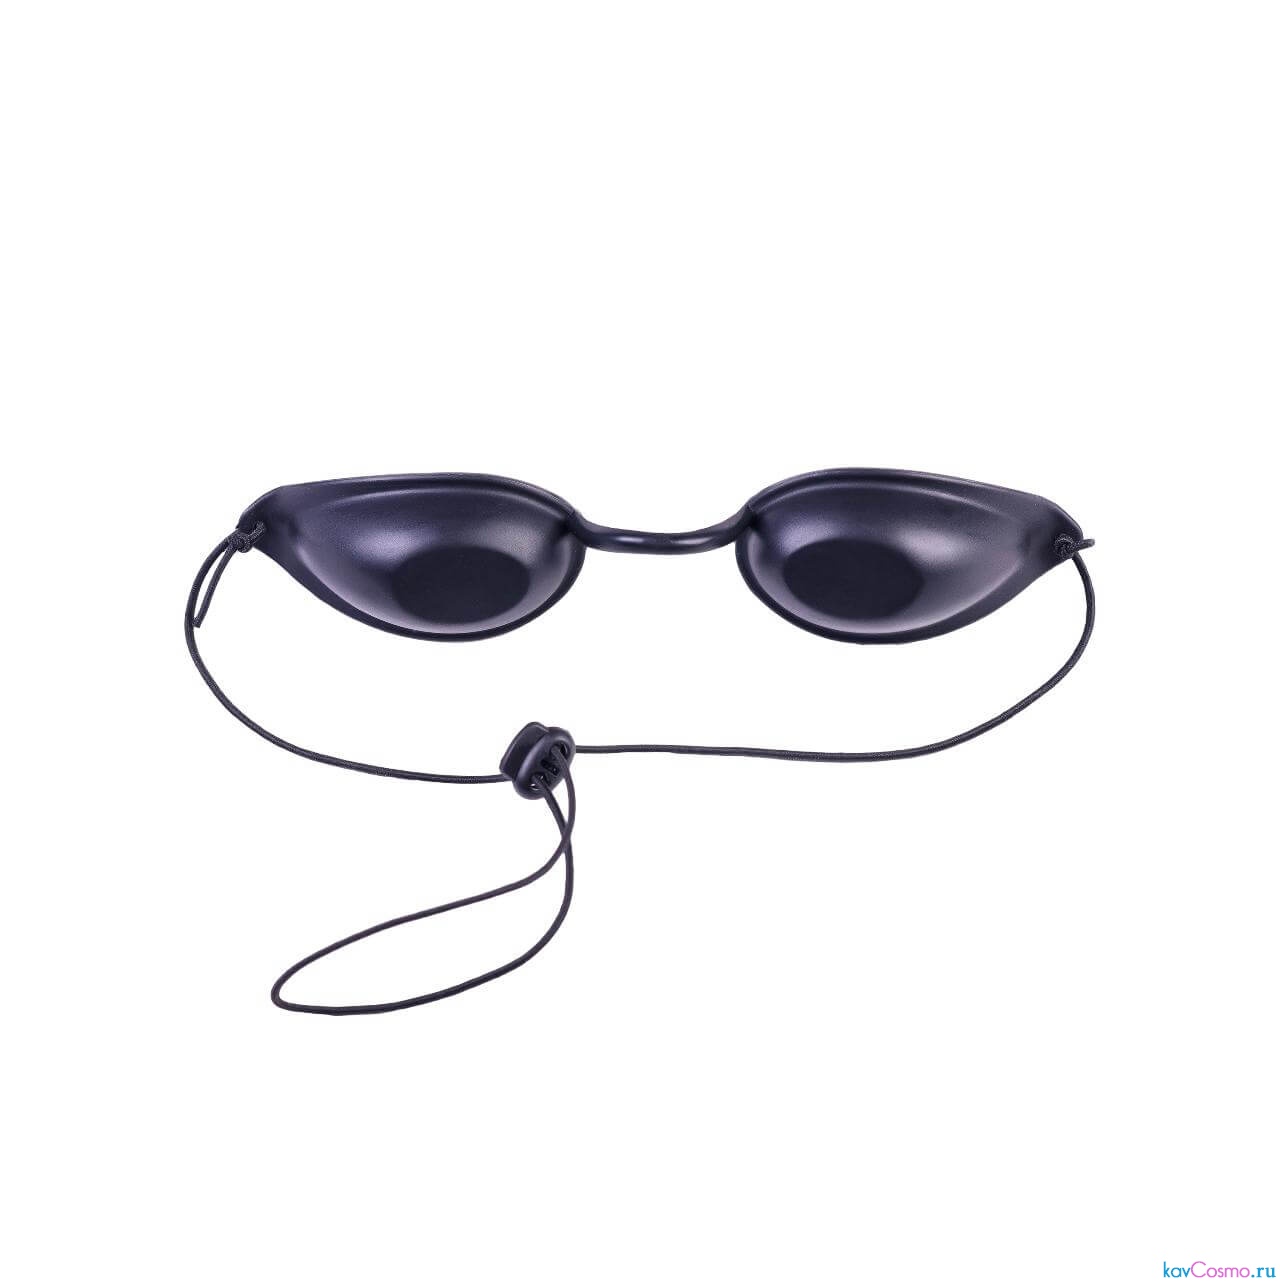 Очки резиновые защитные. Очки защитные от лазерного излучения 660 НМ. Очки защитные от лазерного излучения 450 НМ. Очки защитные зн-22 для защиты от лазерного излучения. Защитные очки для лазера.